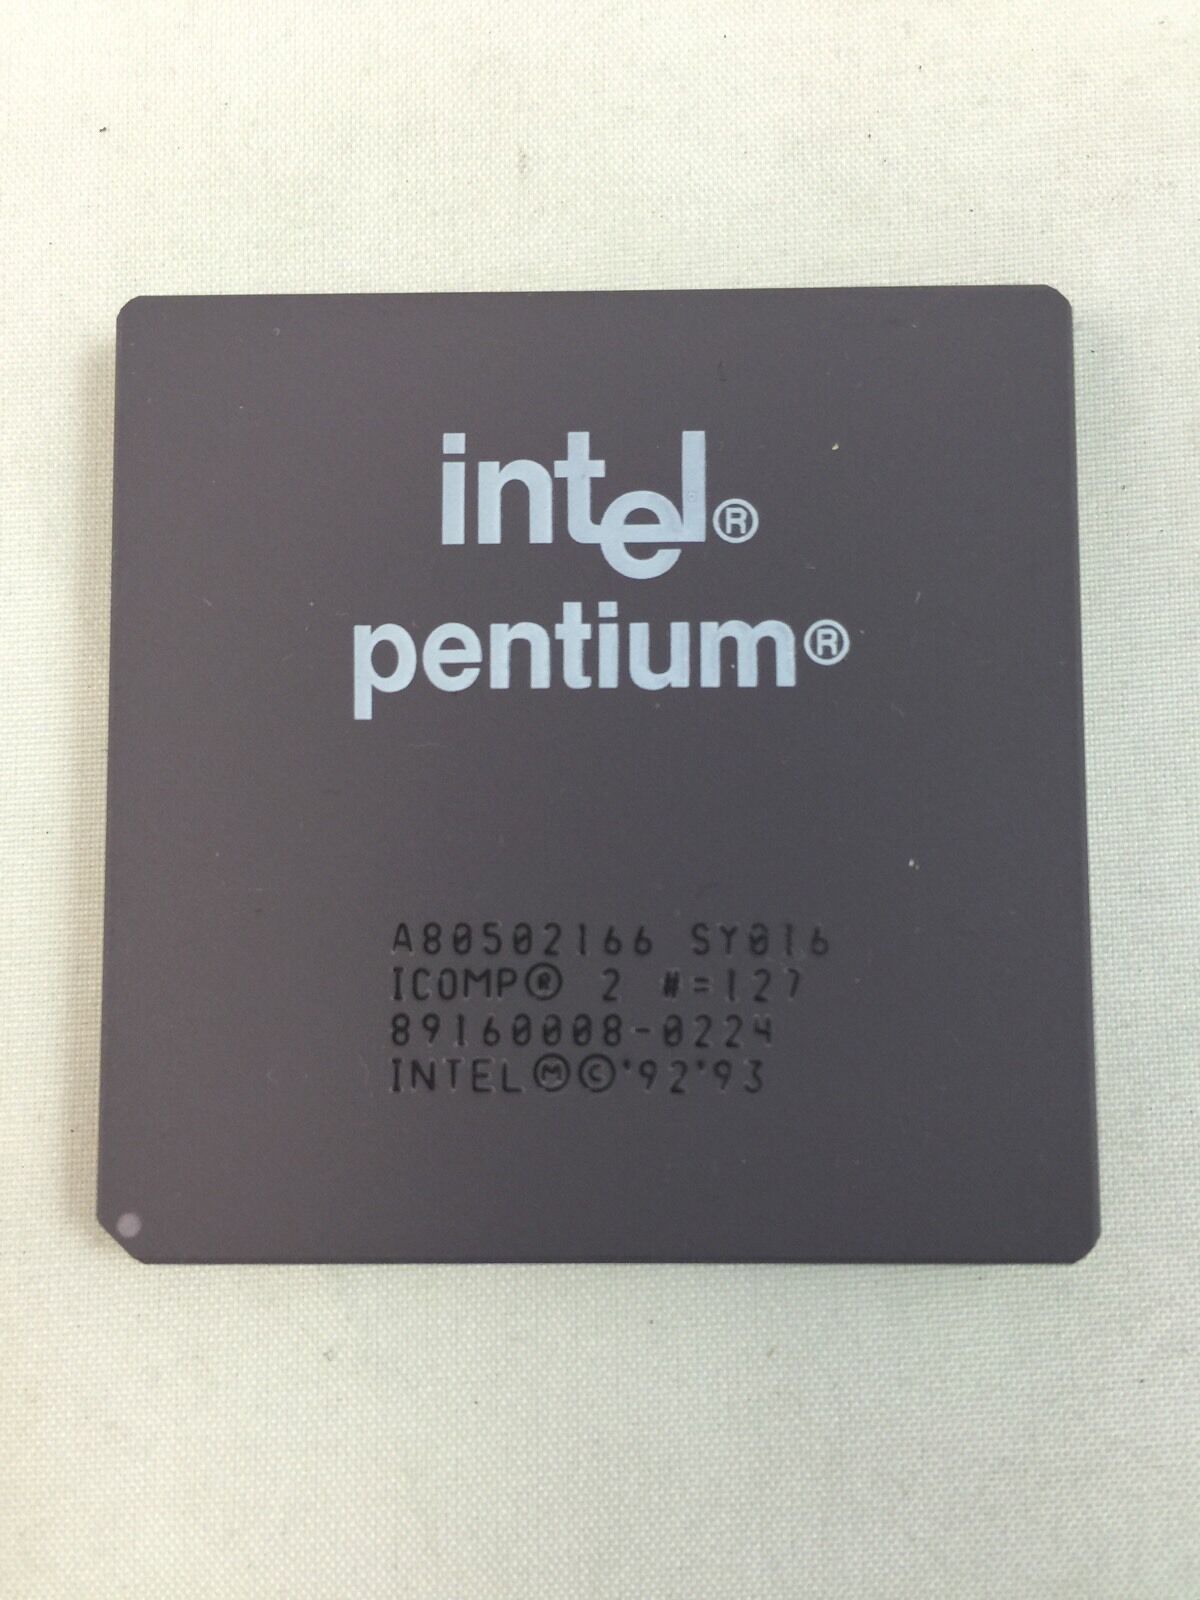 NEW Intel Pentium 166 MHZ CPU Vintage A80502166 1993 Ceramic Gold BRAND NEW  P166